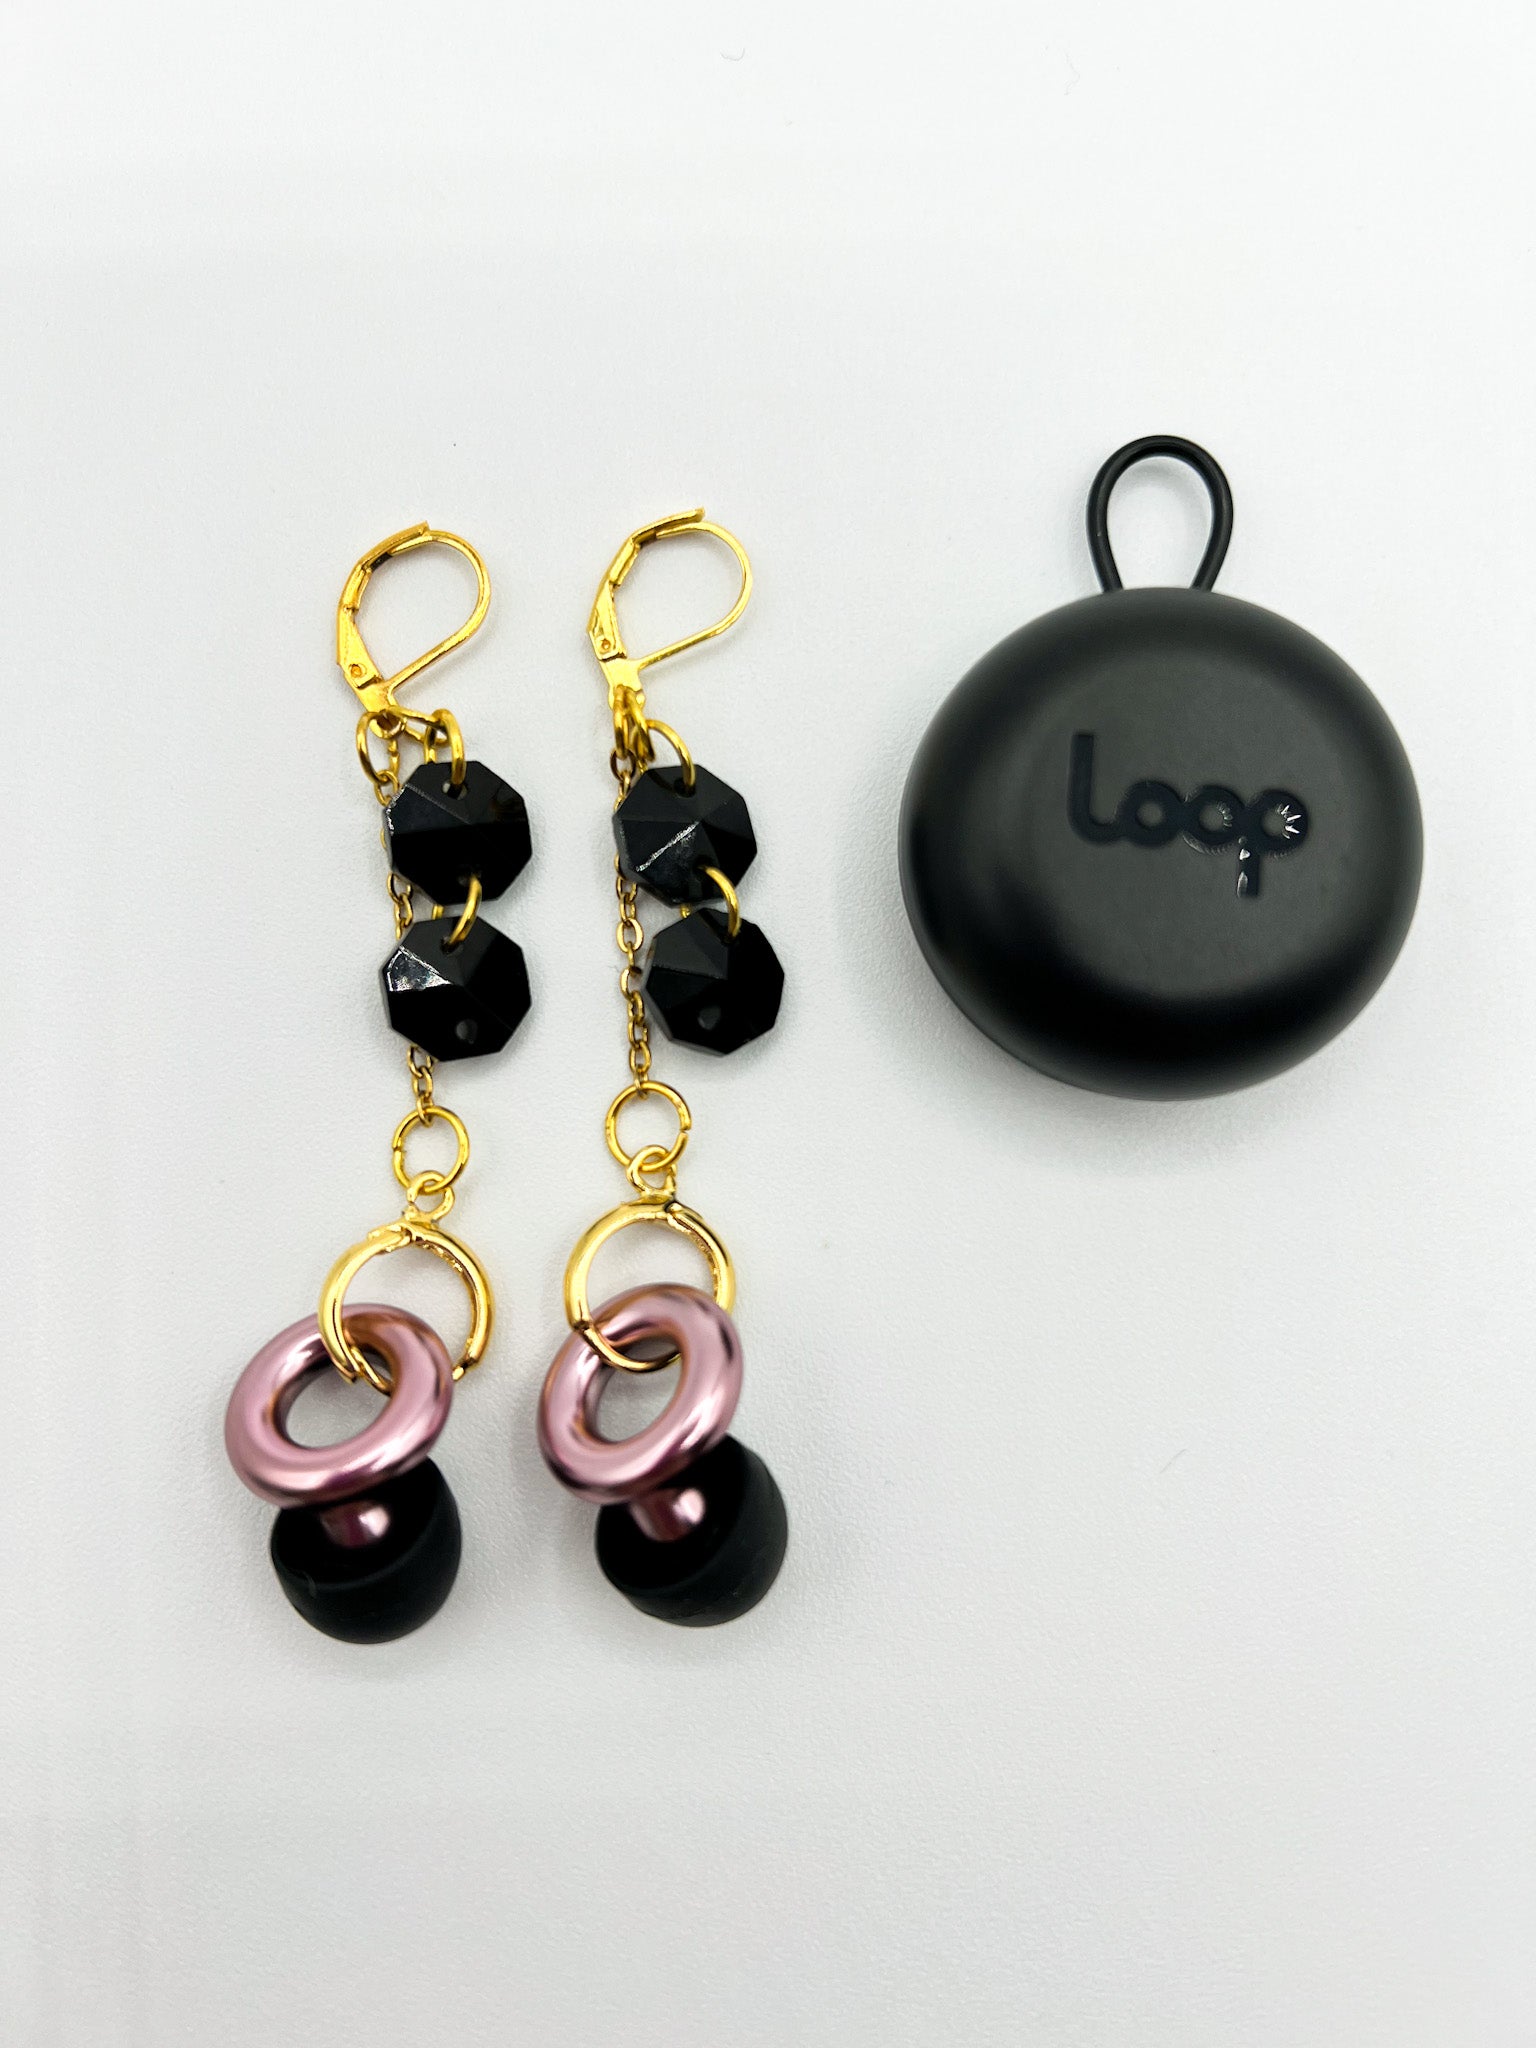 Earplug Holder Earrings for Loop Earplugs Hearing Protection